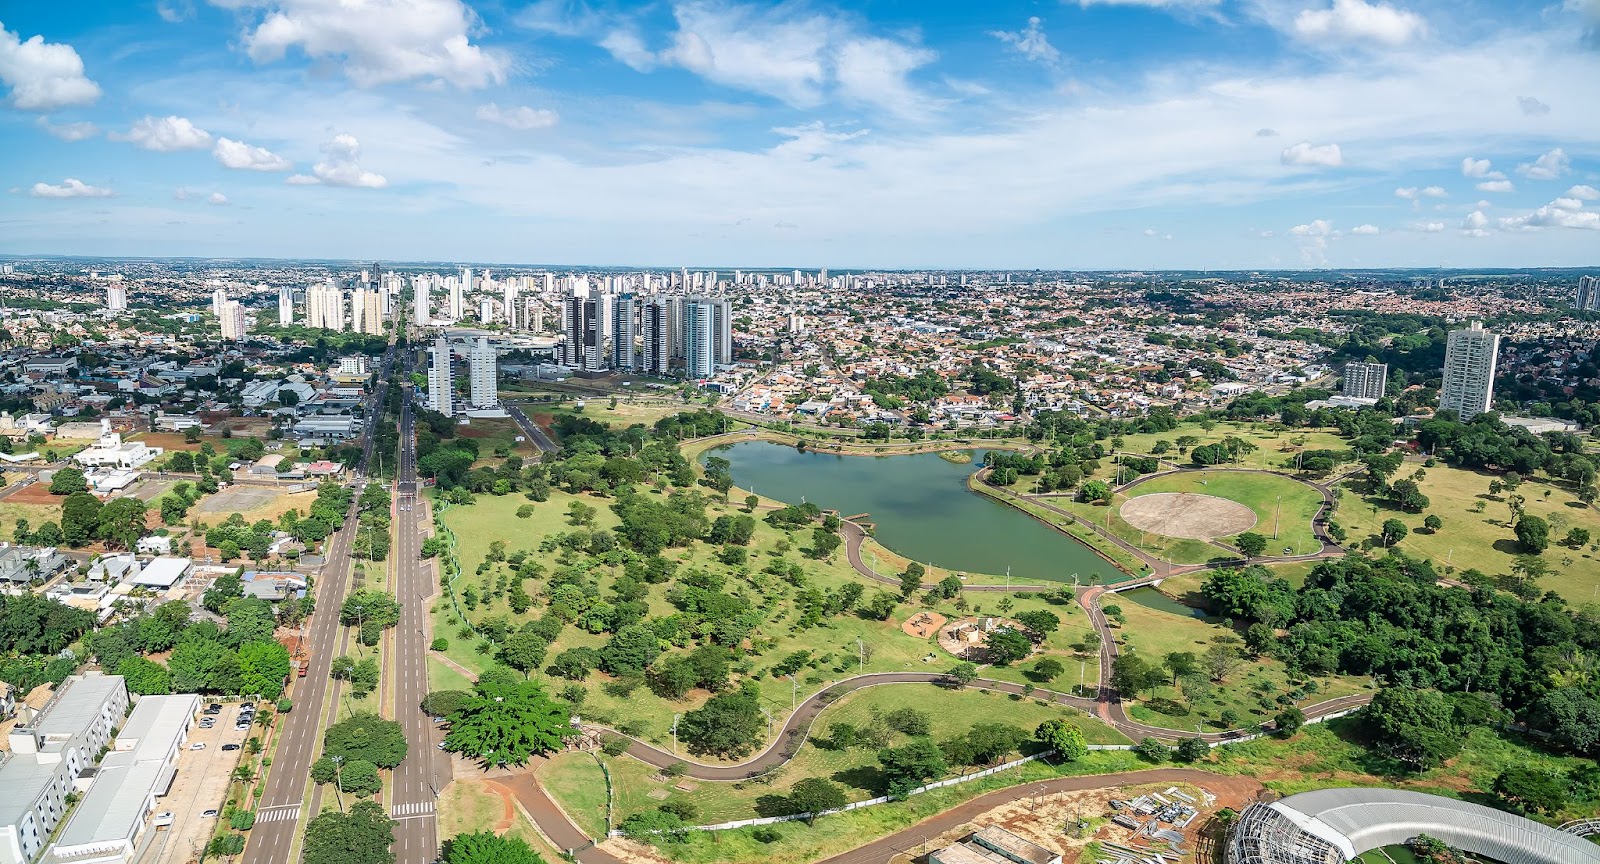 Imagem aérea de um dos parques em Campo Grande. No centro da imagem, um grande lago rodeado pelo gramado do parque